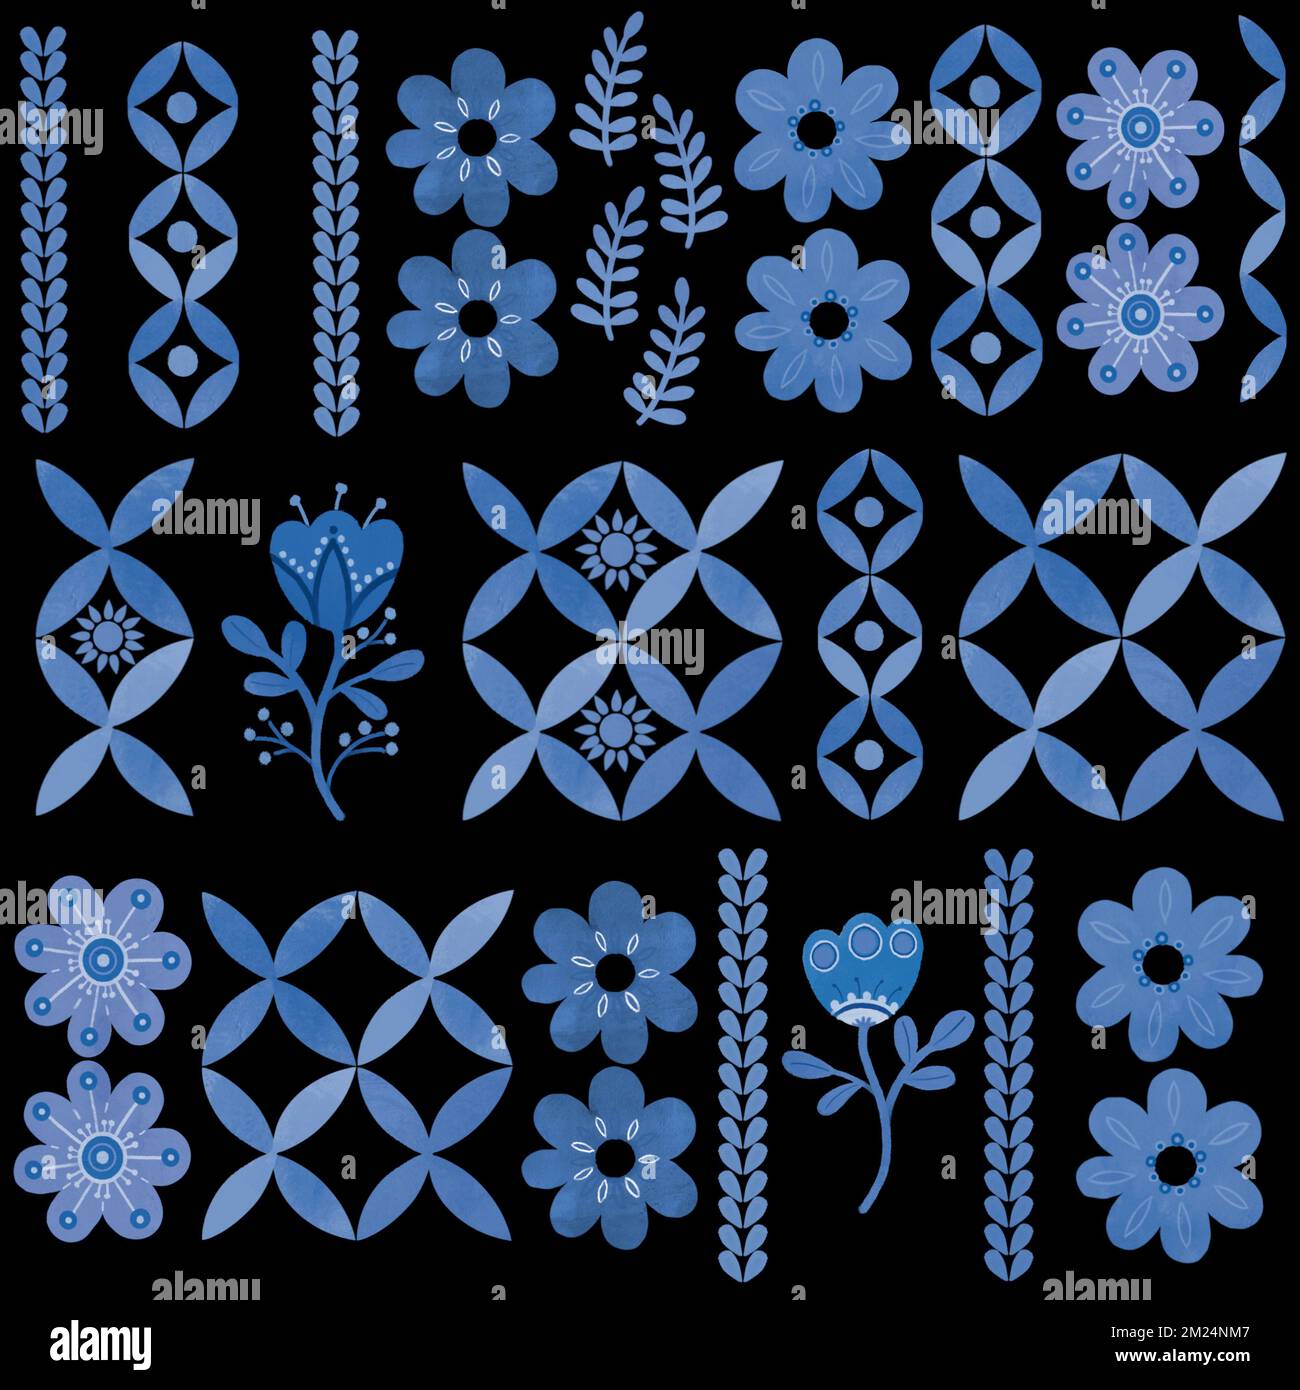 Motif floral bleu damassé à la main. Motif, décoration en mosaïque. Branche bleue, fleurs et feuilles. Élément décoratif azulejo bleu et blanc ornemental Banque D'Images